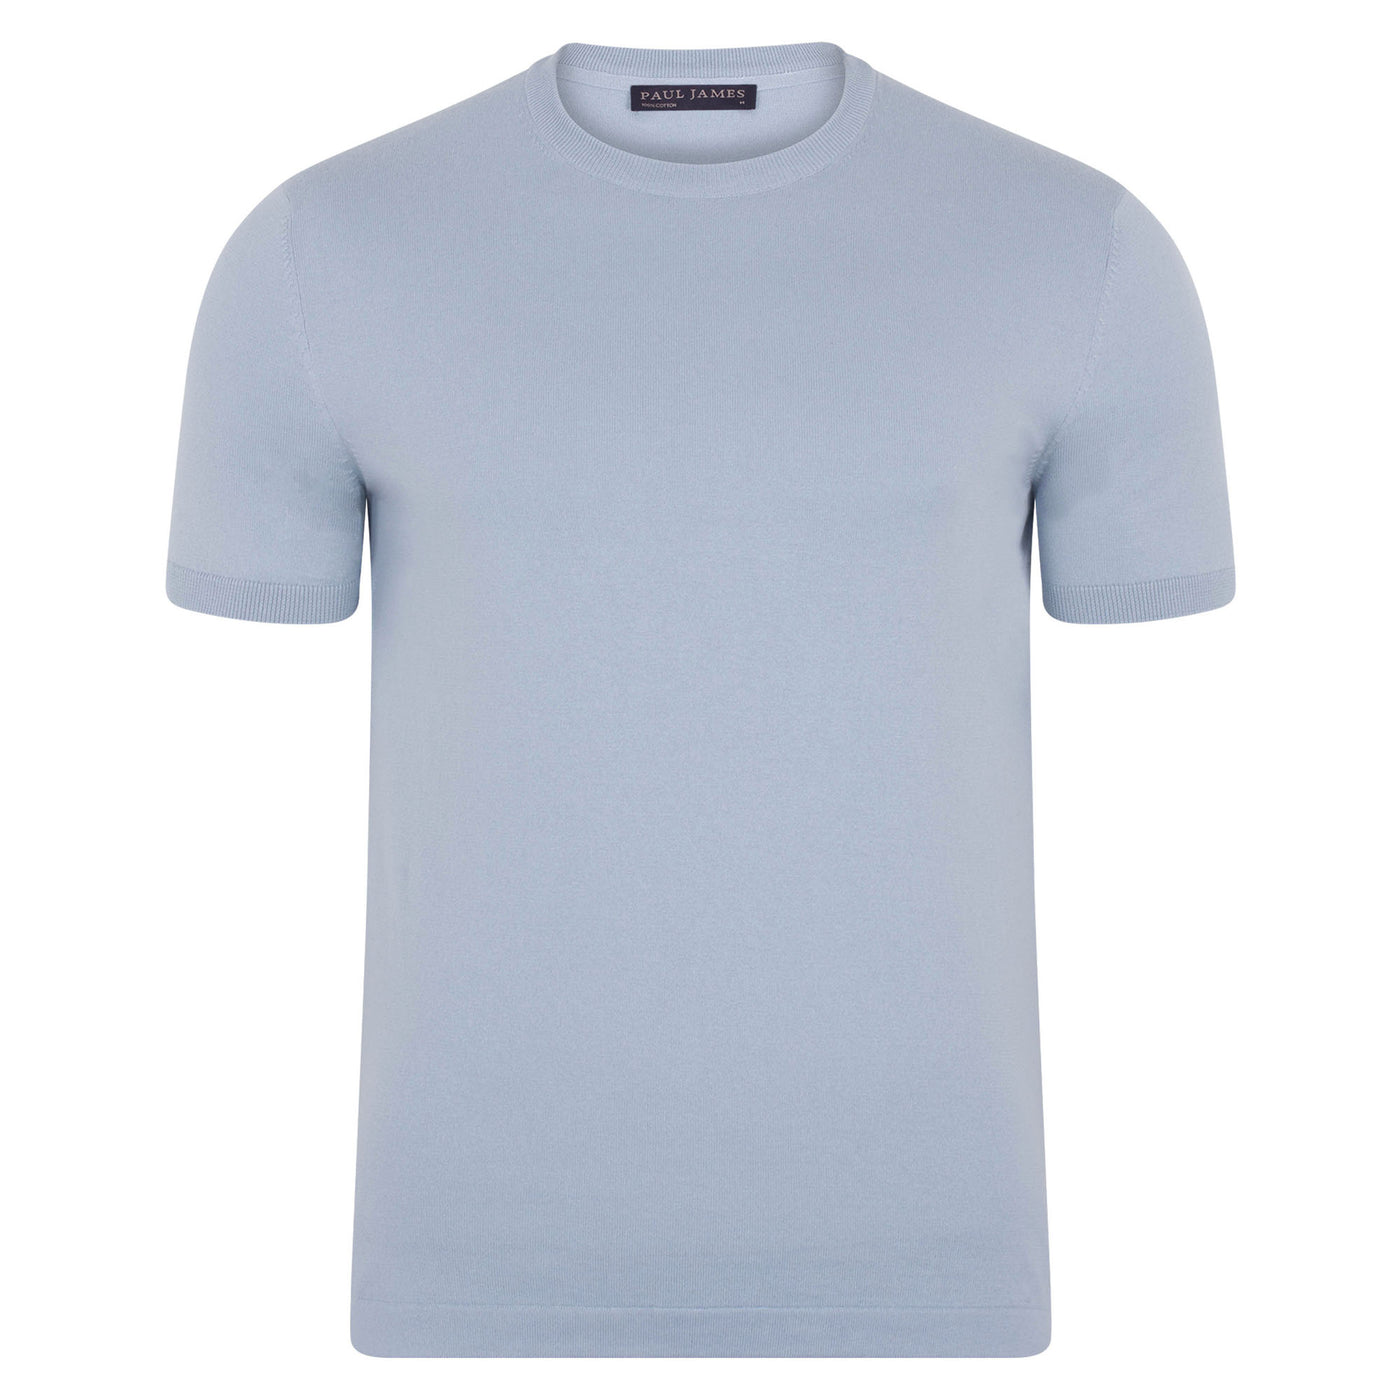 Herren-T-Shirt aus 100 % ultrafeiner Baumwolle